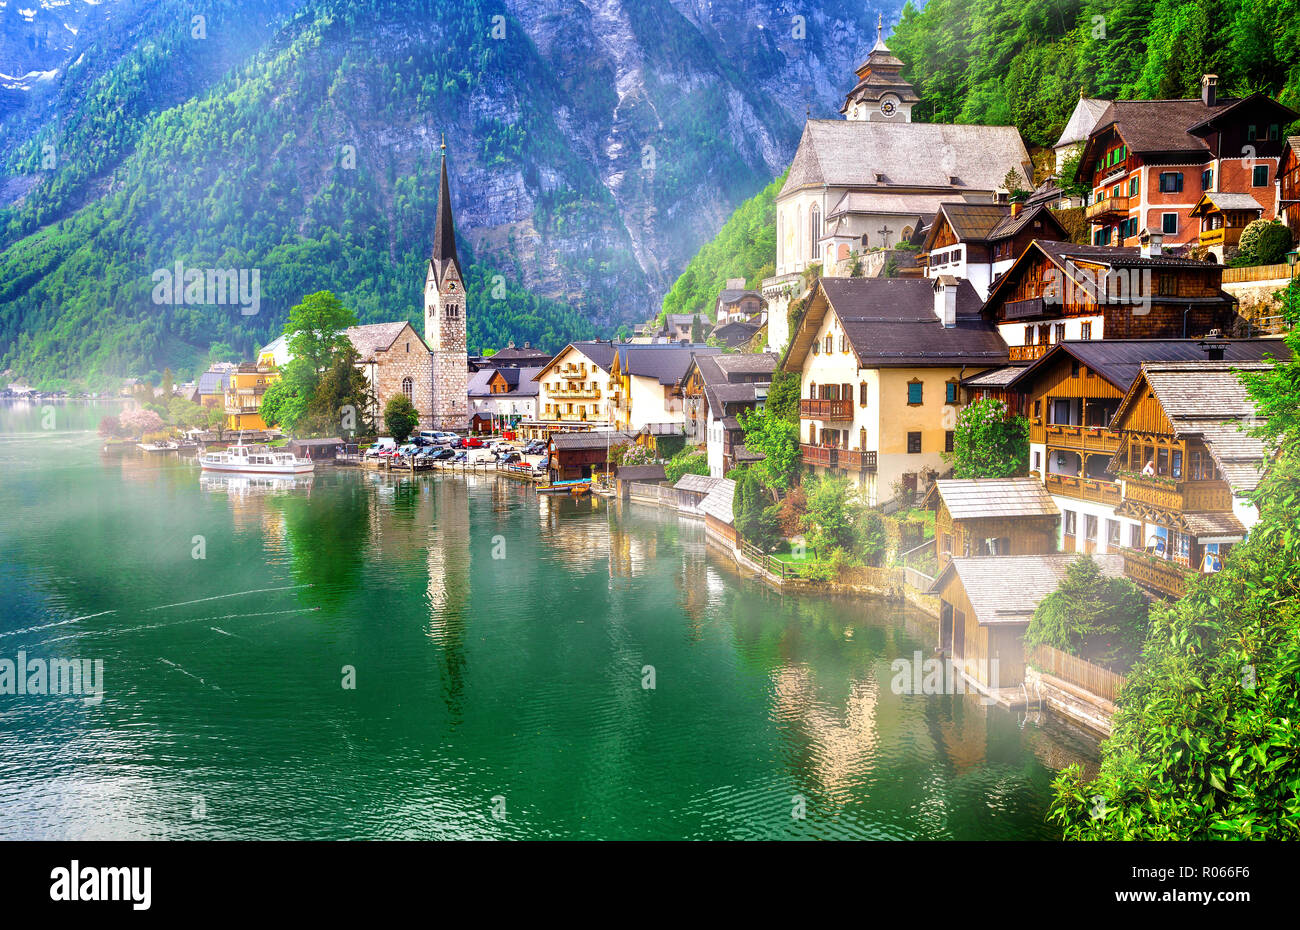 Schönen Hallstatt Dorf, mit traditionellen Häusern und dem See, Österreich. Stockfoto